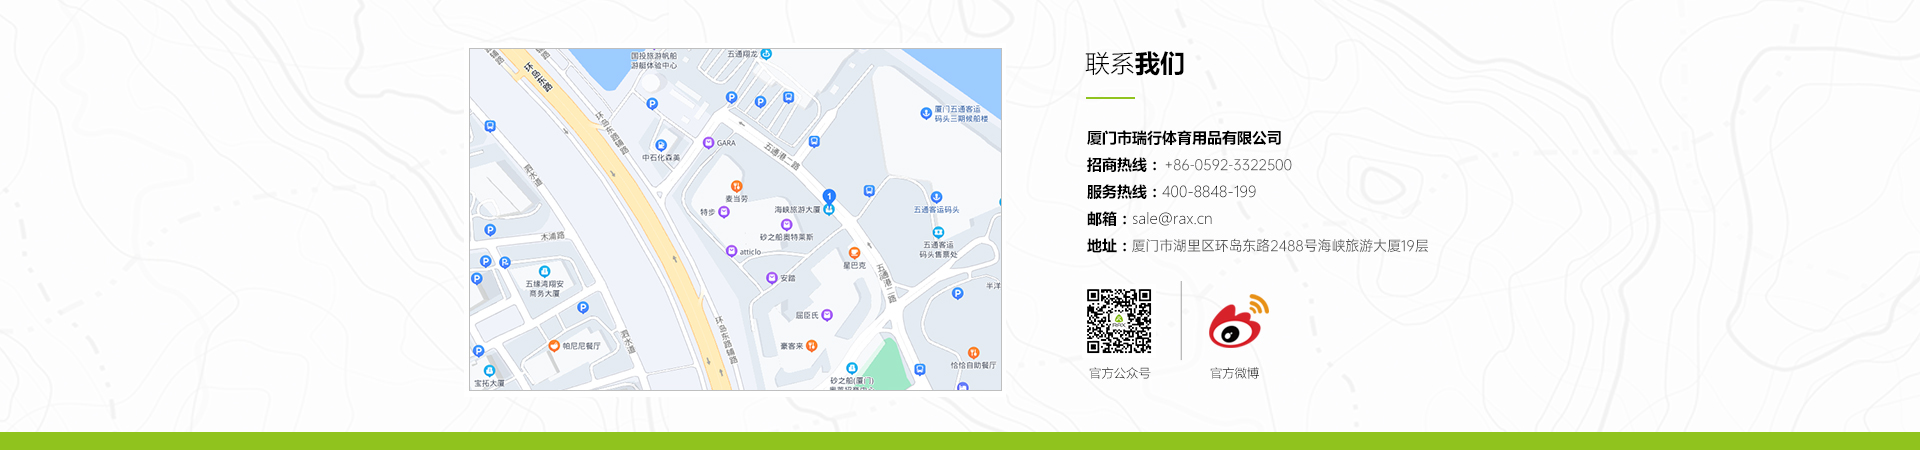 RAX联系我们-中文-地图.jpg